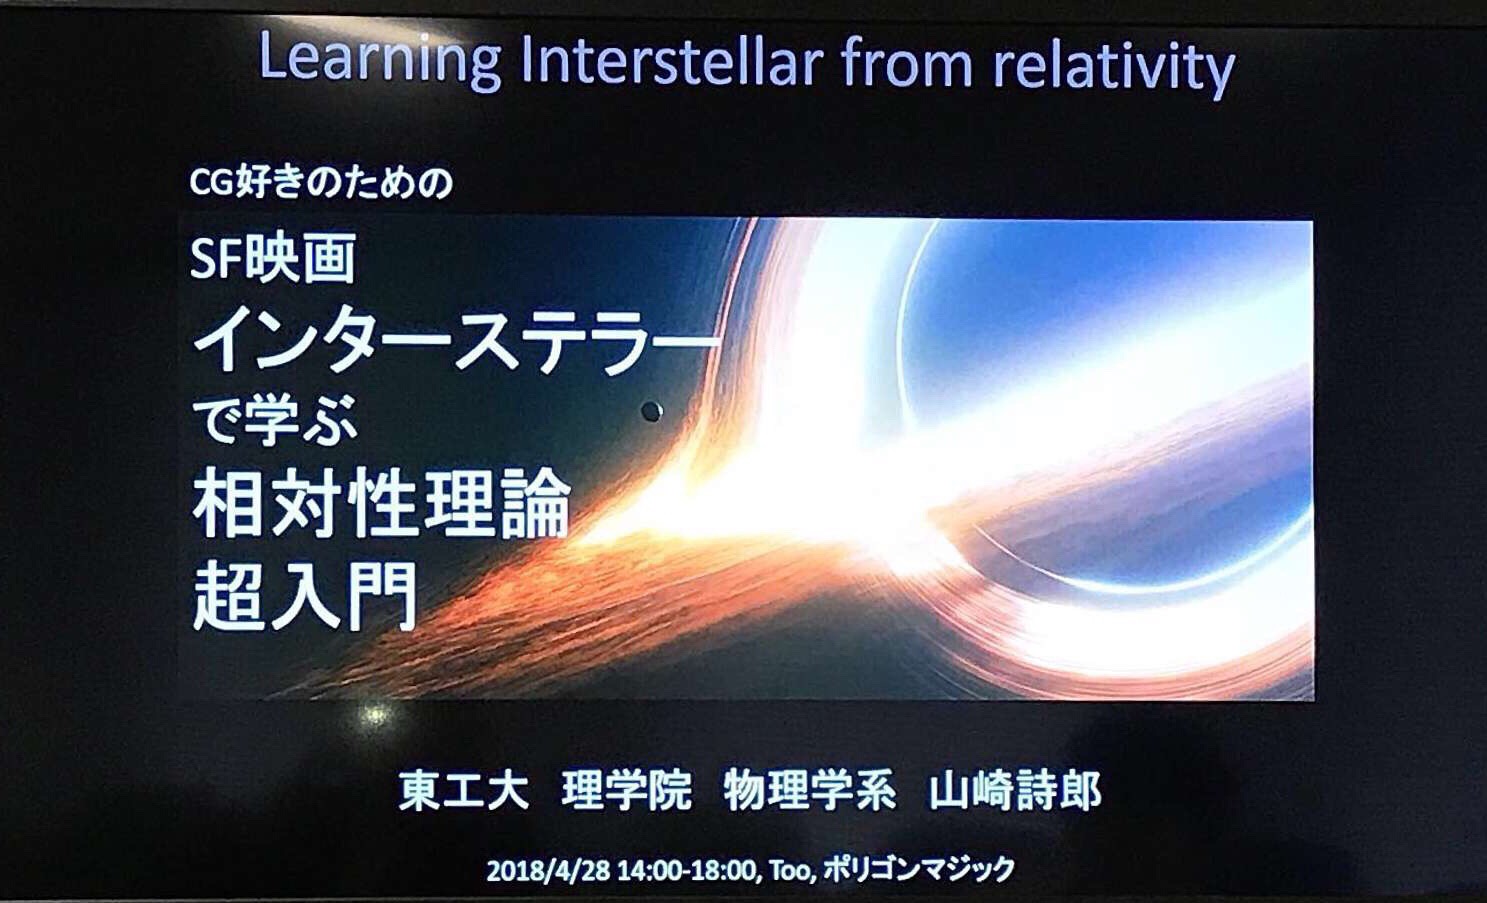 インターステラーで学ぶ相対性理論超入門 山崎詩郎さんの講演会に参加しました 呼吸器内科医 中田潤子のブログ